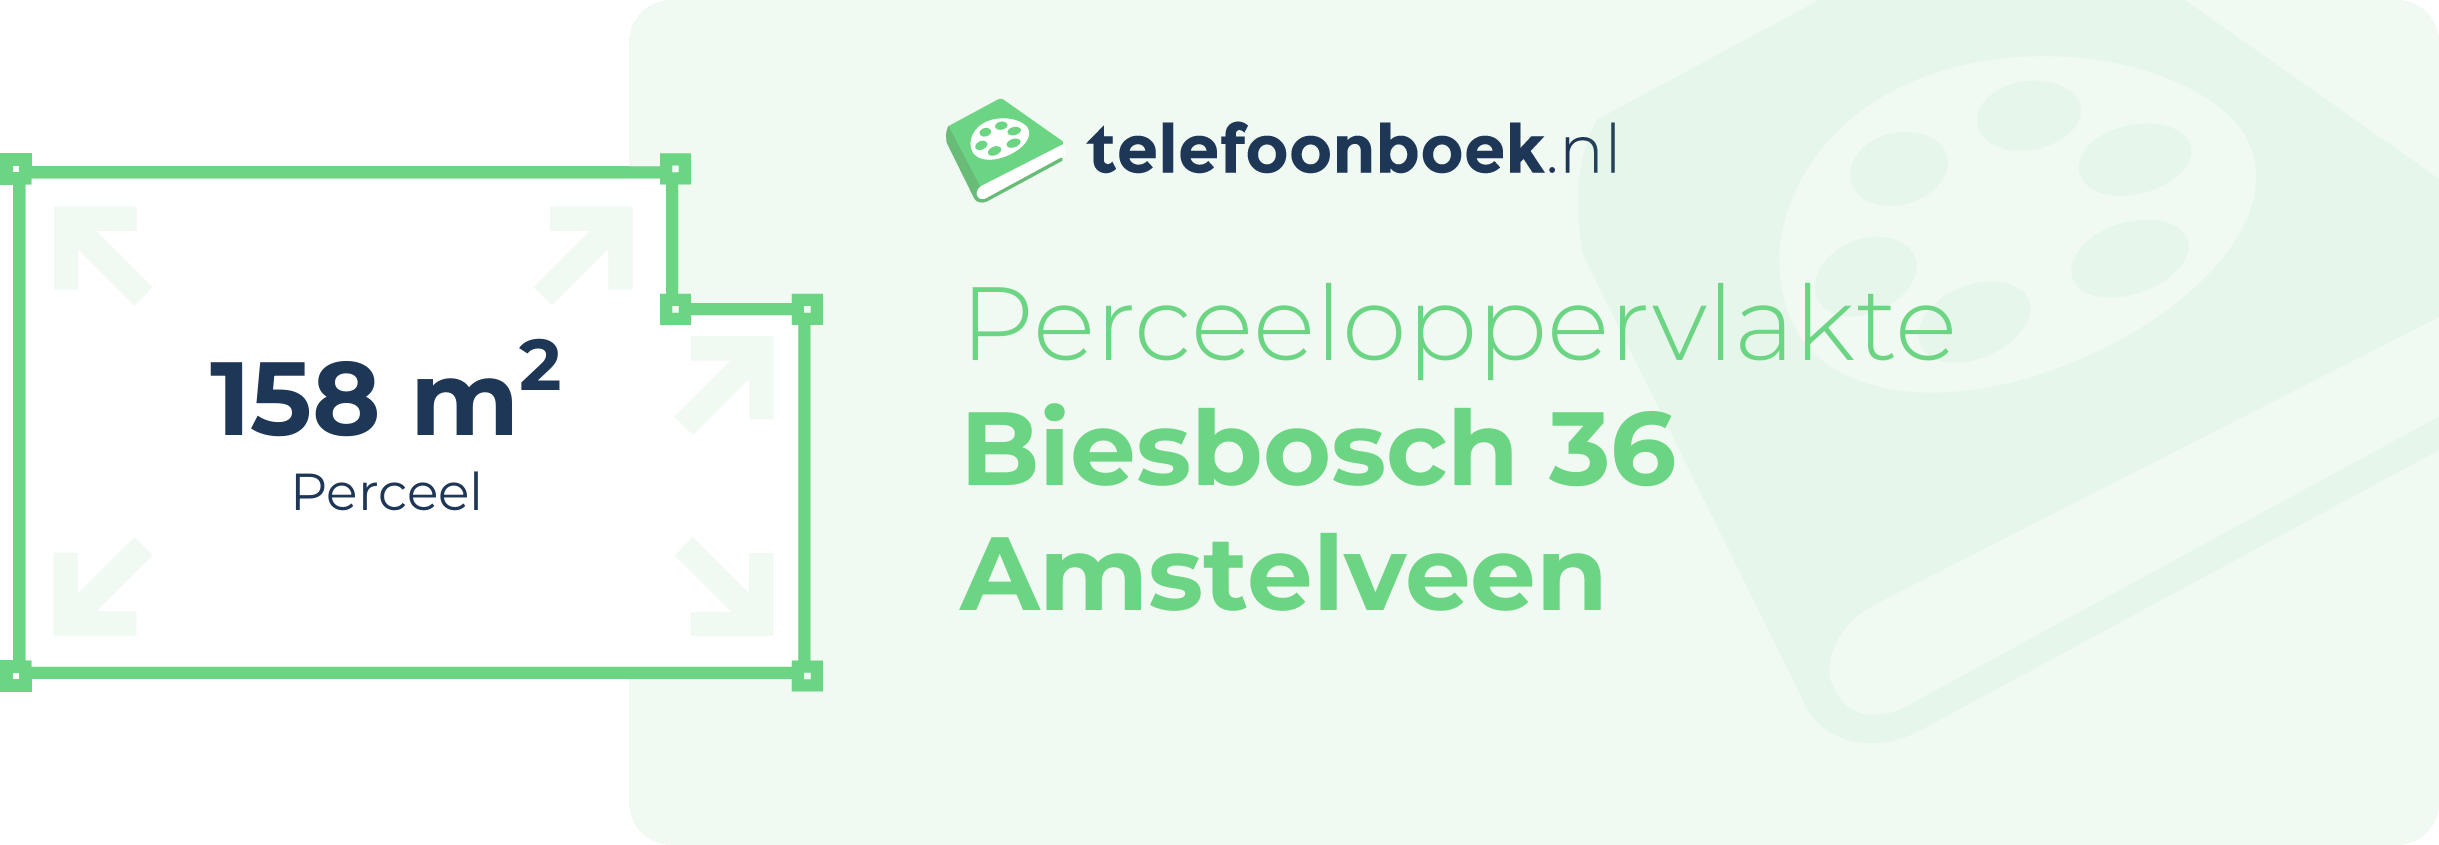 Perceeloppervlakte Biesbosch 36 Amstelveen